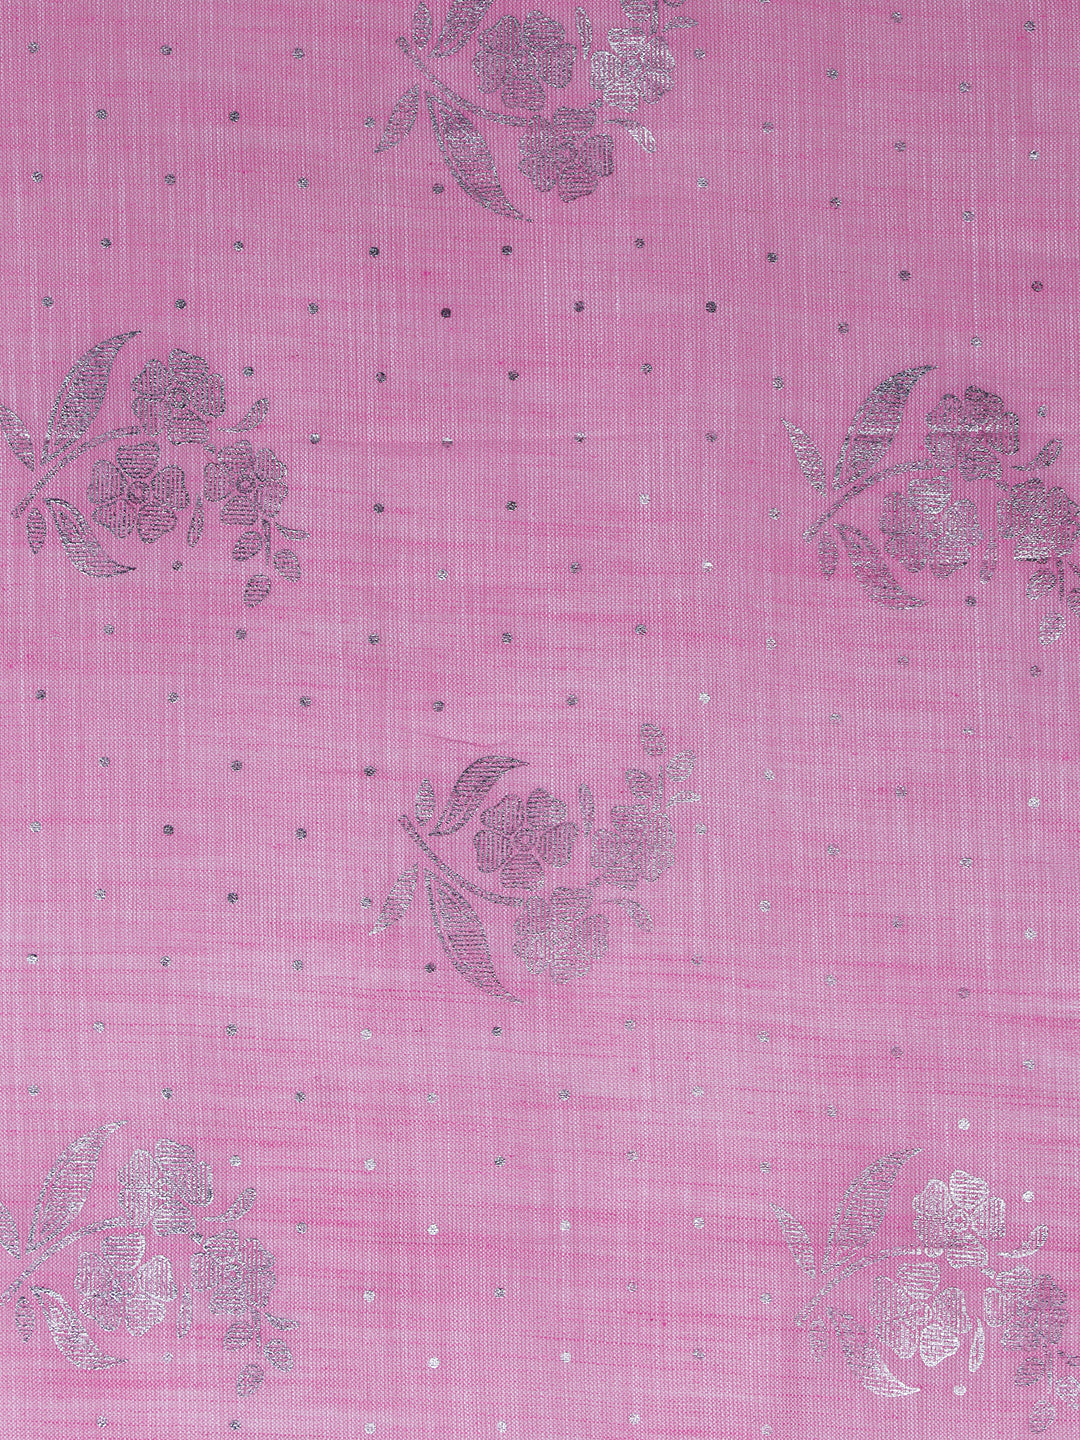 Womens Semi Linen Pink Saree SL91